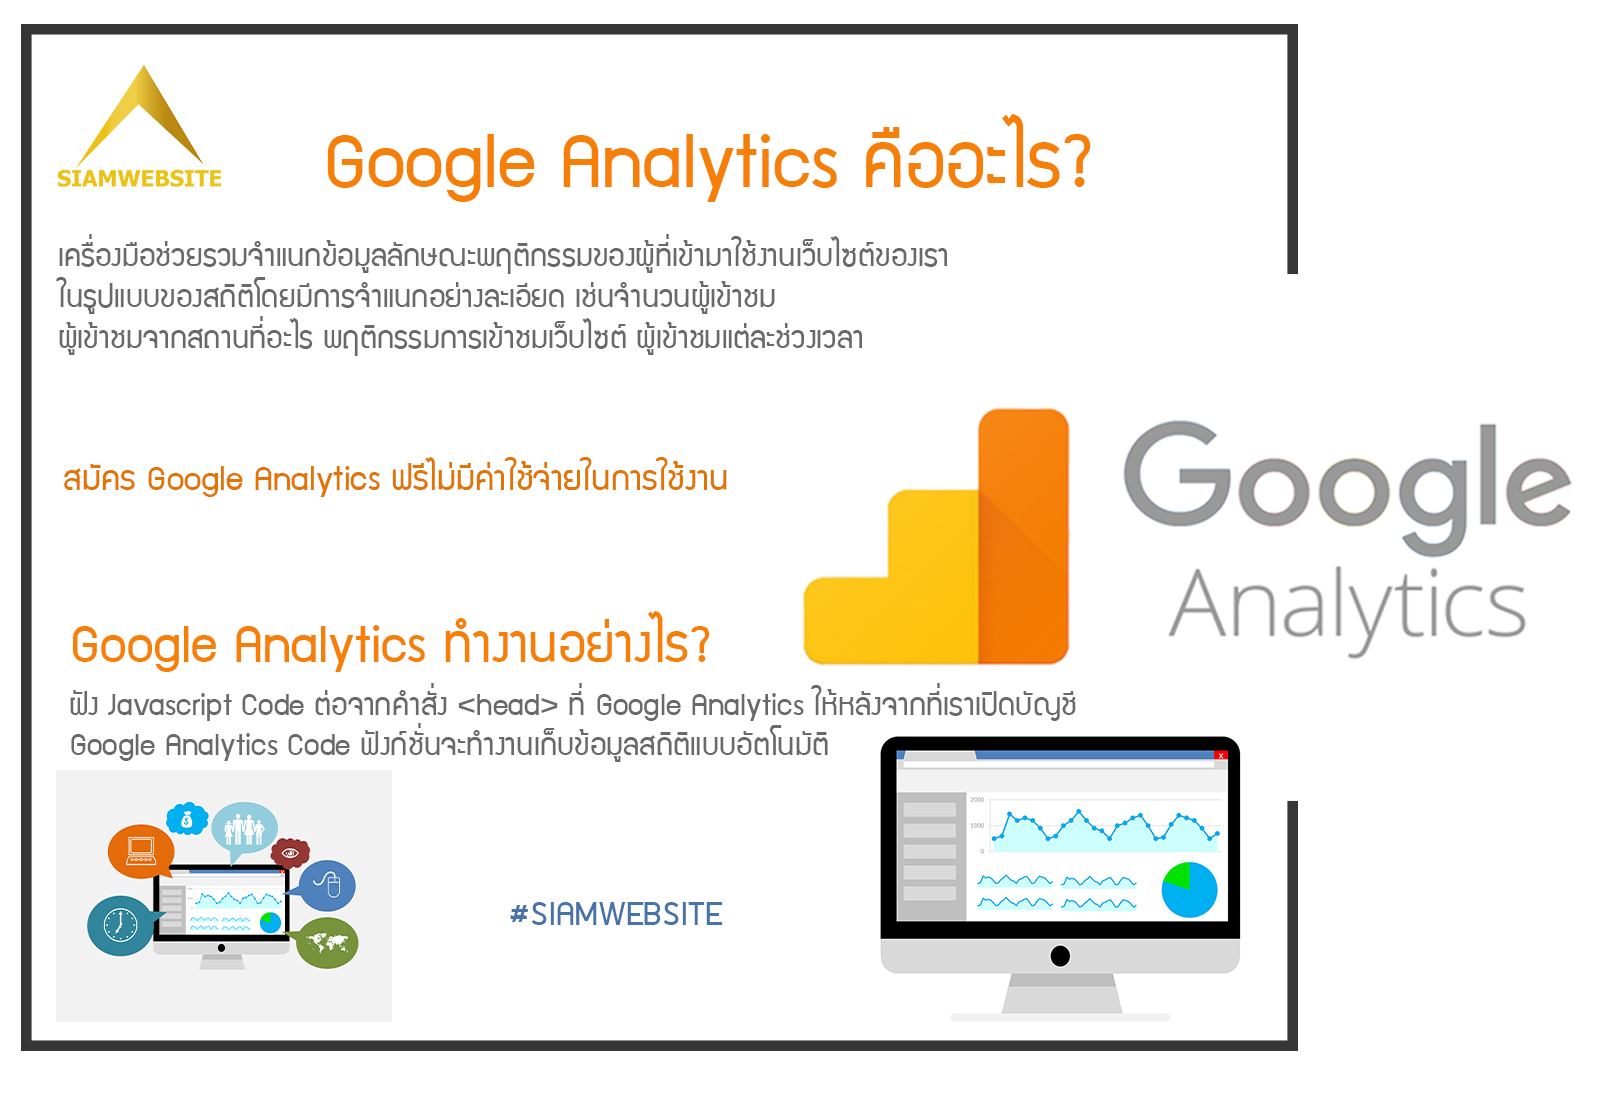 รับทําเว็บไซต์ เว็บขยายสายงาน Google Analytics คืออะไร? | TTT-WEBSITE 